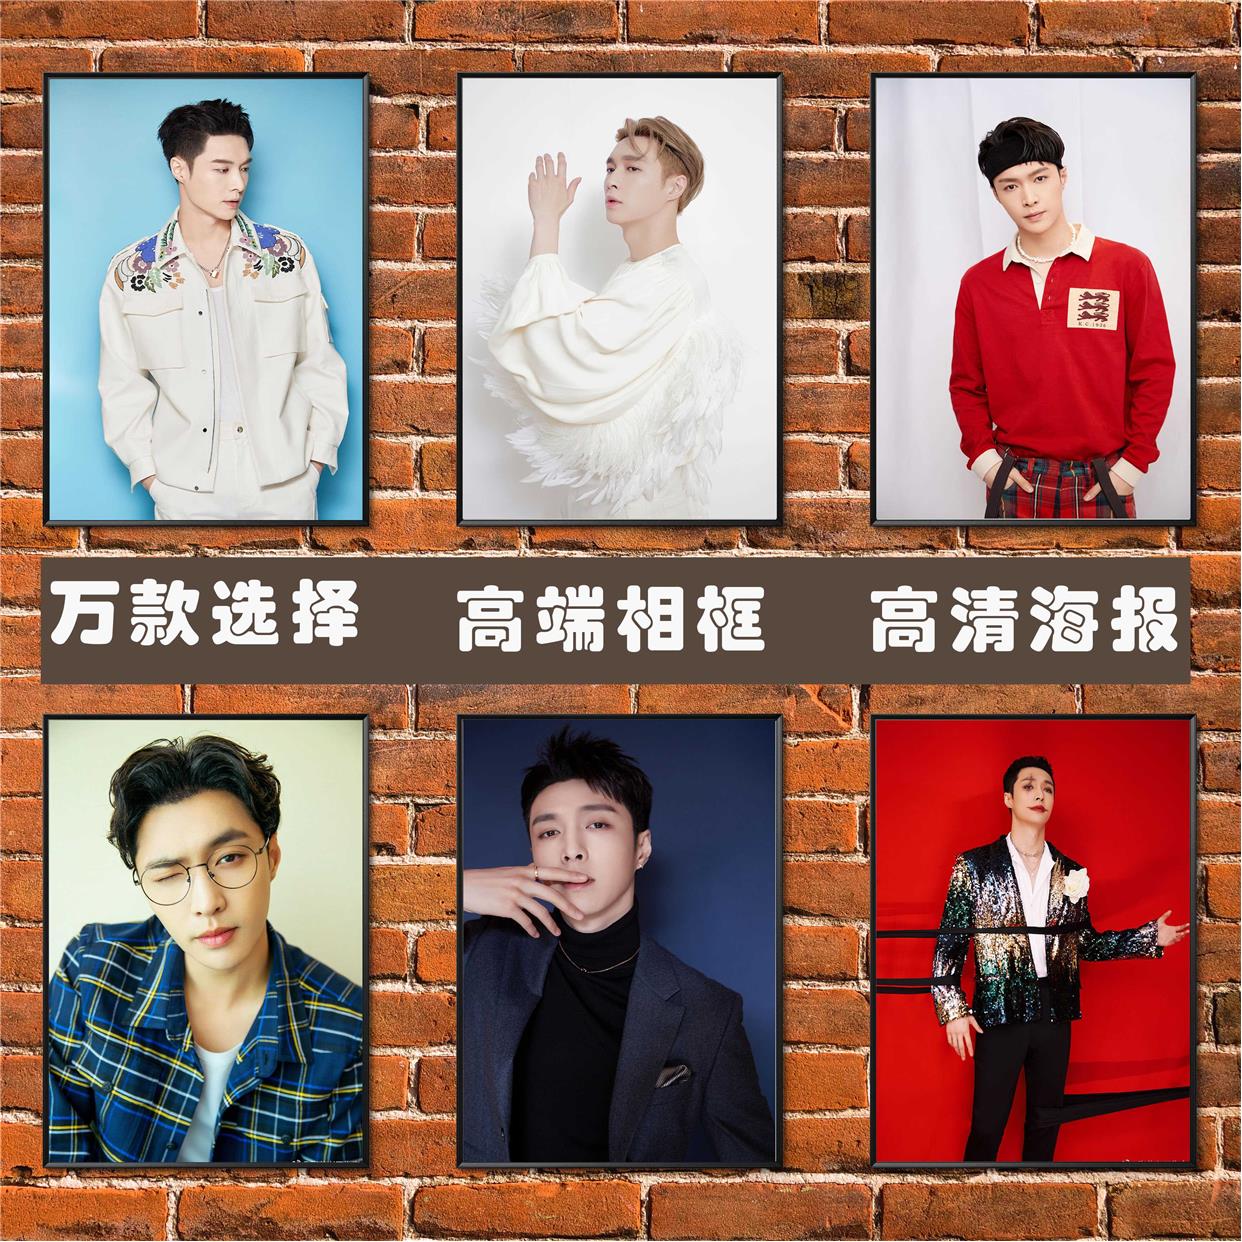 张艺兴海报 EXO帅哥明星歌手学生宿舍寝室超大壁纸相框装饰挂贴画